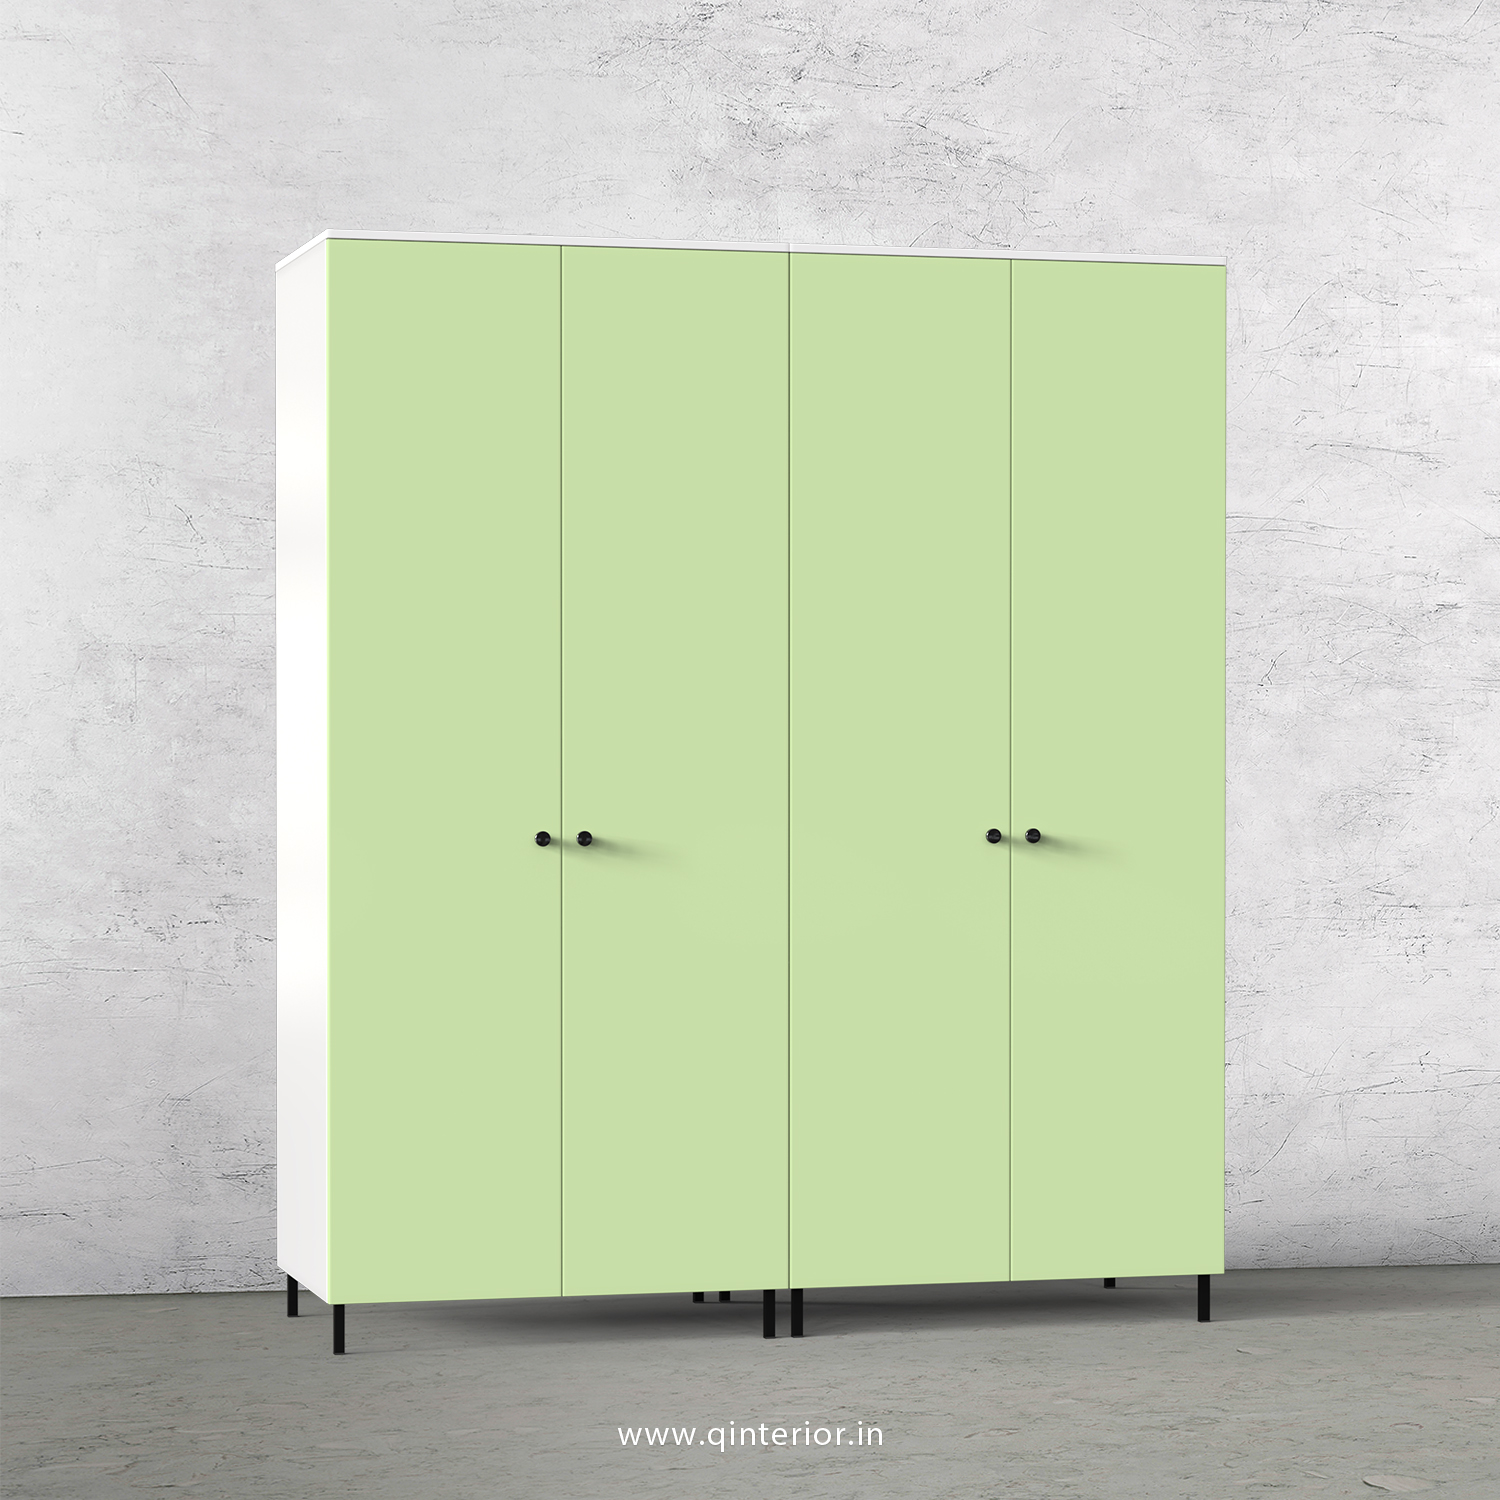 Lambent 4 Door Wardrobe in White and Pairie Green Finish – FWRD001 C83